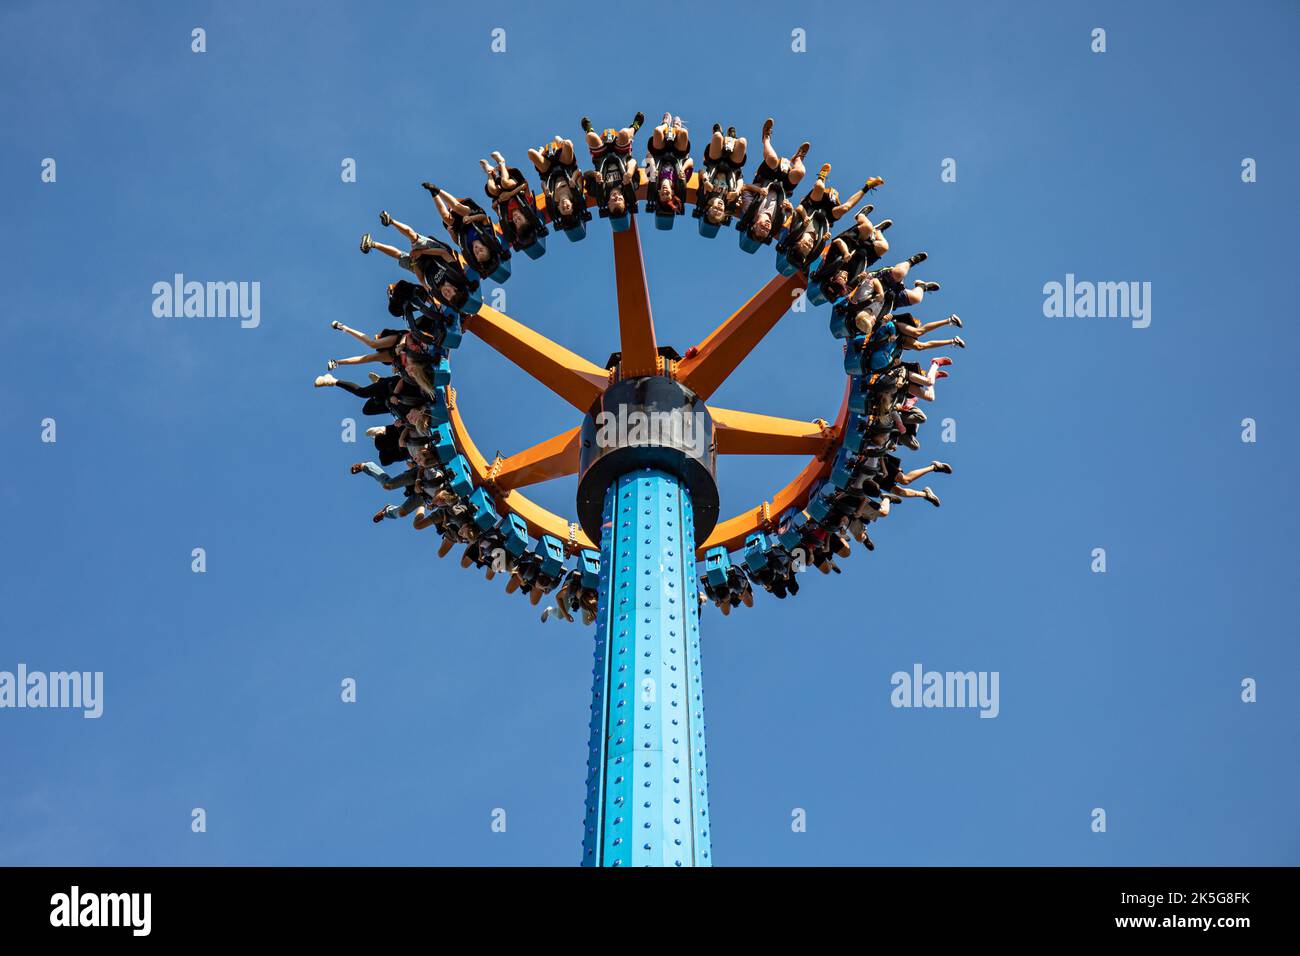 Les gens qui traînaient à l'envers contre le ciel bleu à X attraction Ride dans le parc d'attractions de Särkänniemi, Tampere, Finlande Banque D'Images